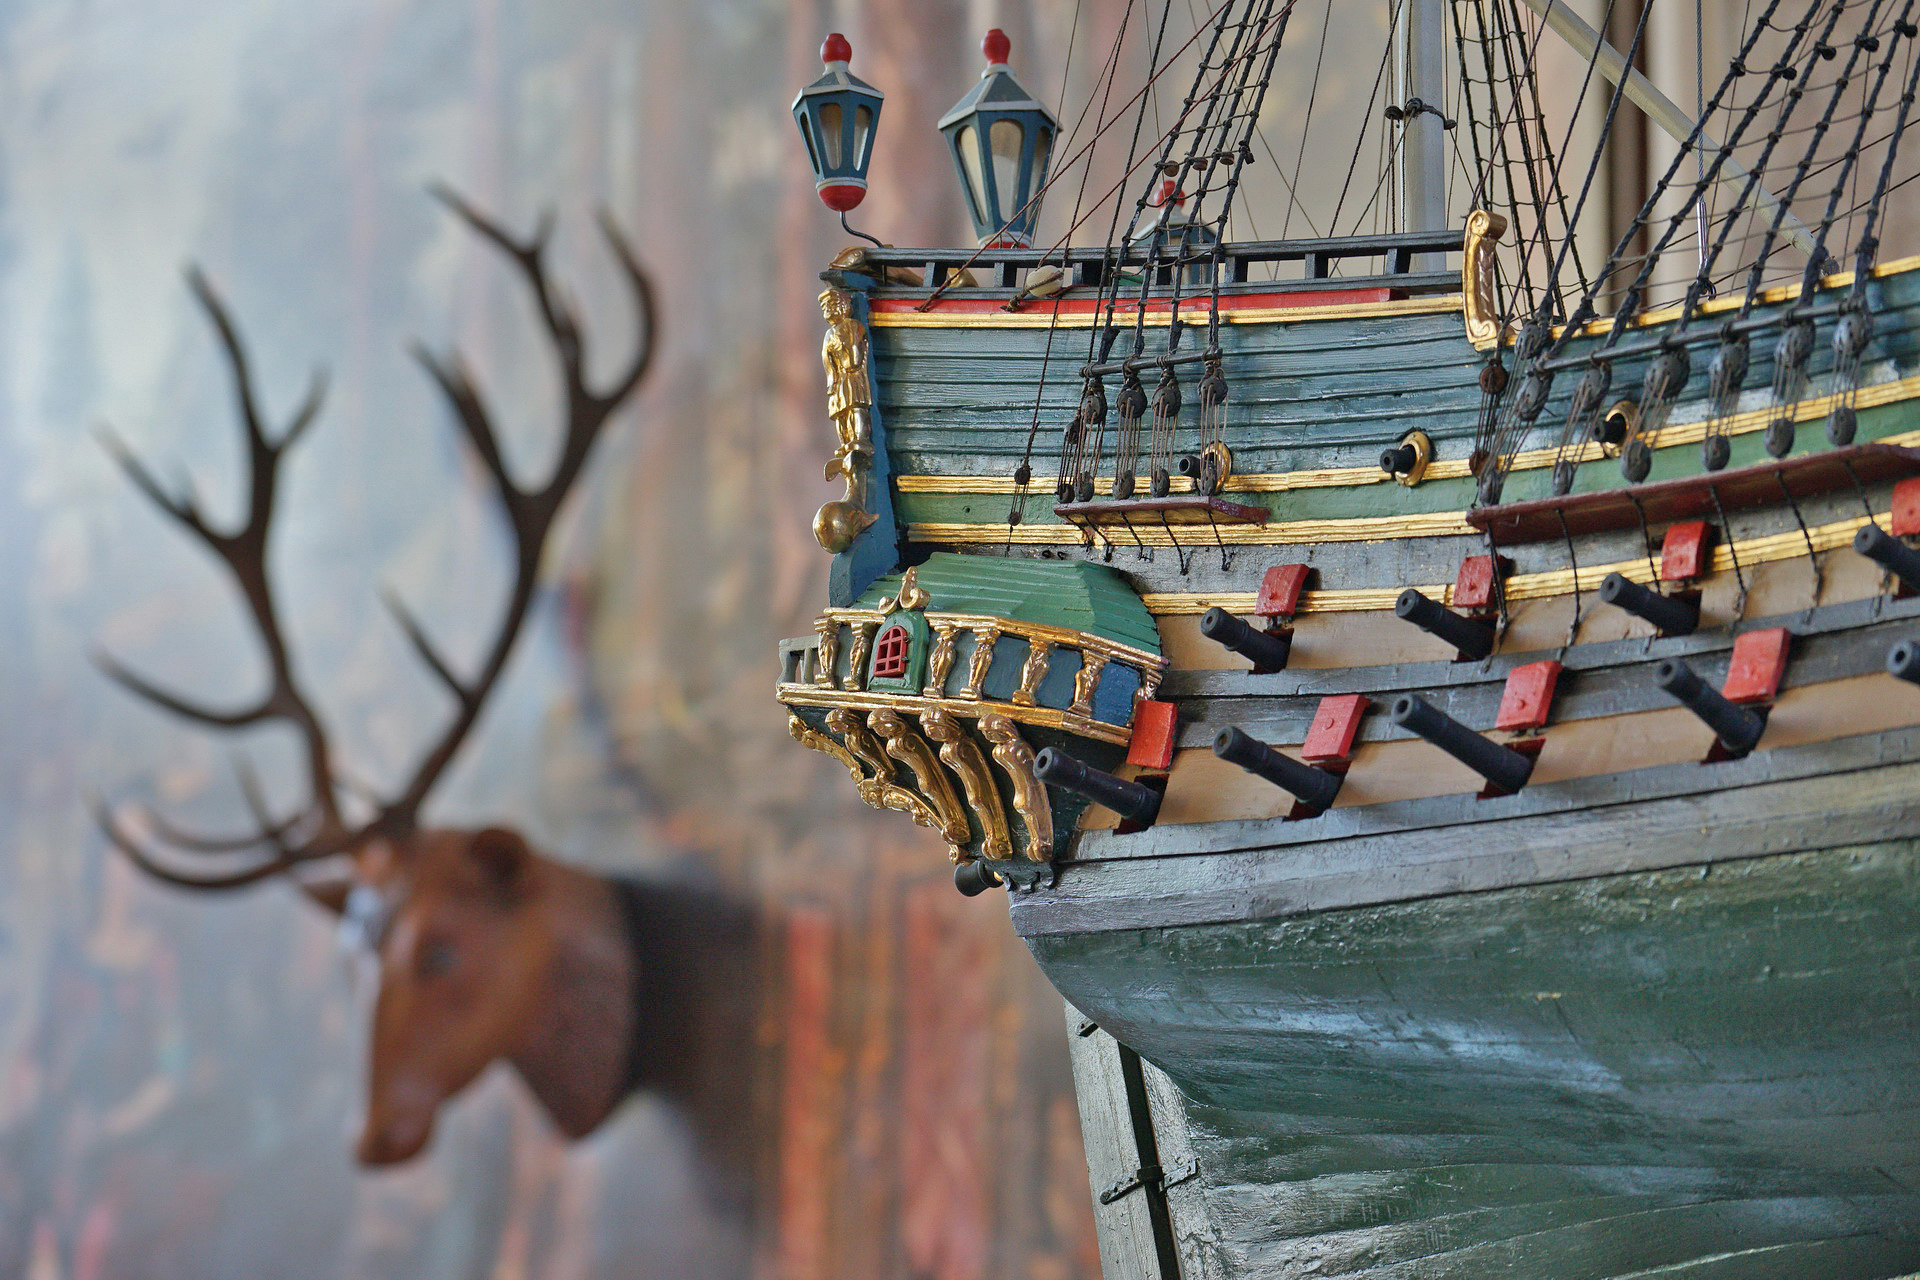 Zbliżenie na rufę modelu okrętu św. Jakub. W oddali zawieszona na ścianie rzeźba głowy jelenia z naturalnym porożem.